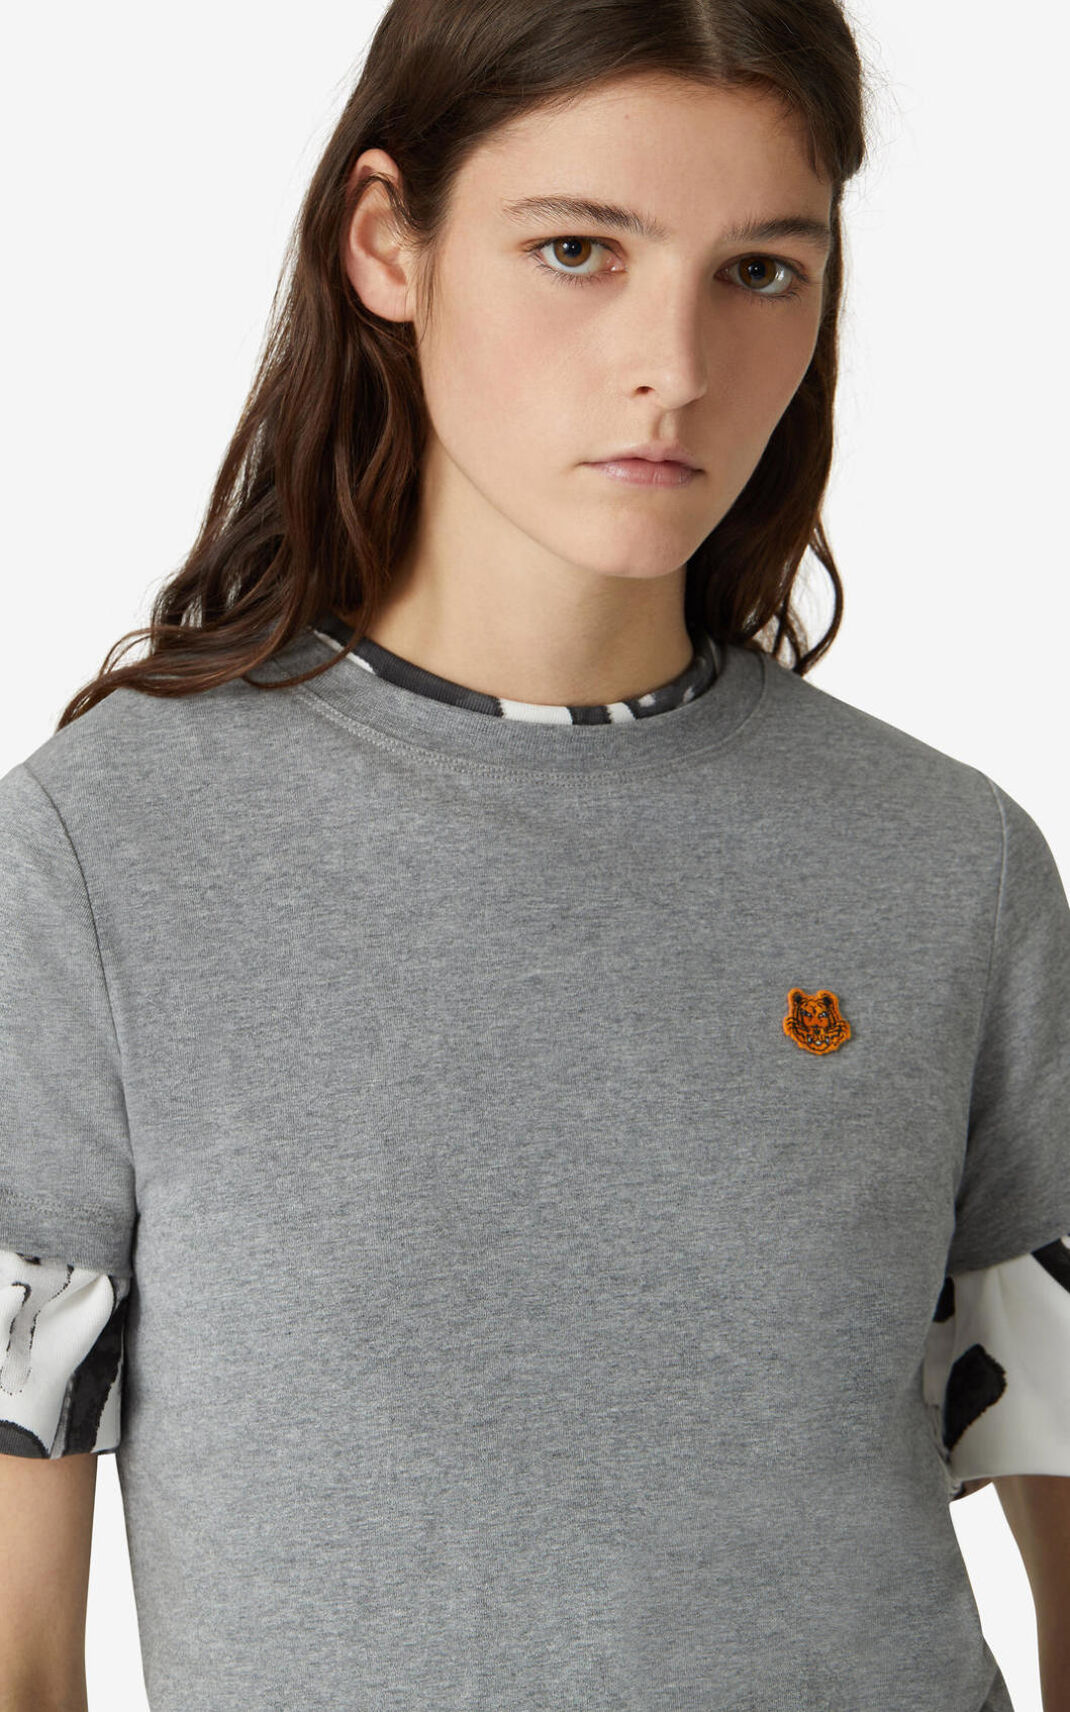 Camiseta Kenzo Tiger Crest Feminino - Cinzentas | 372FNGRWB